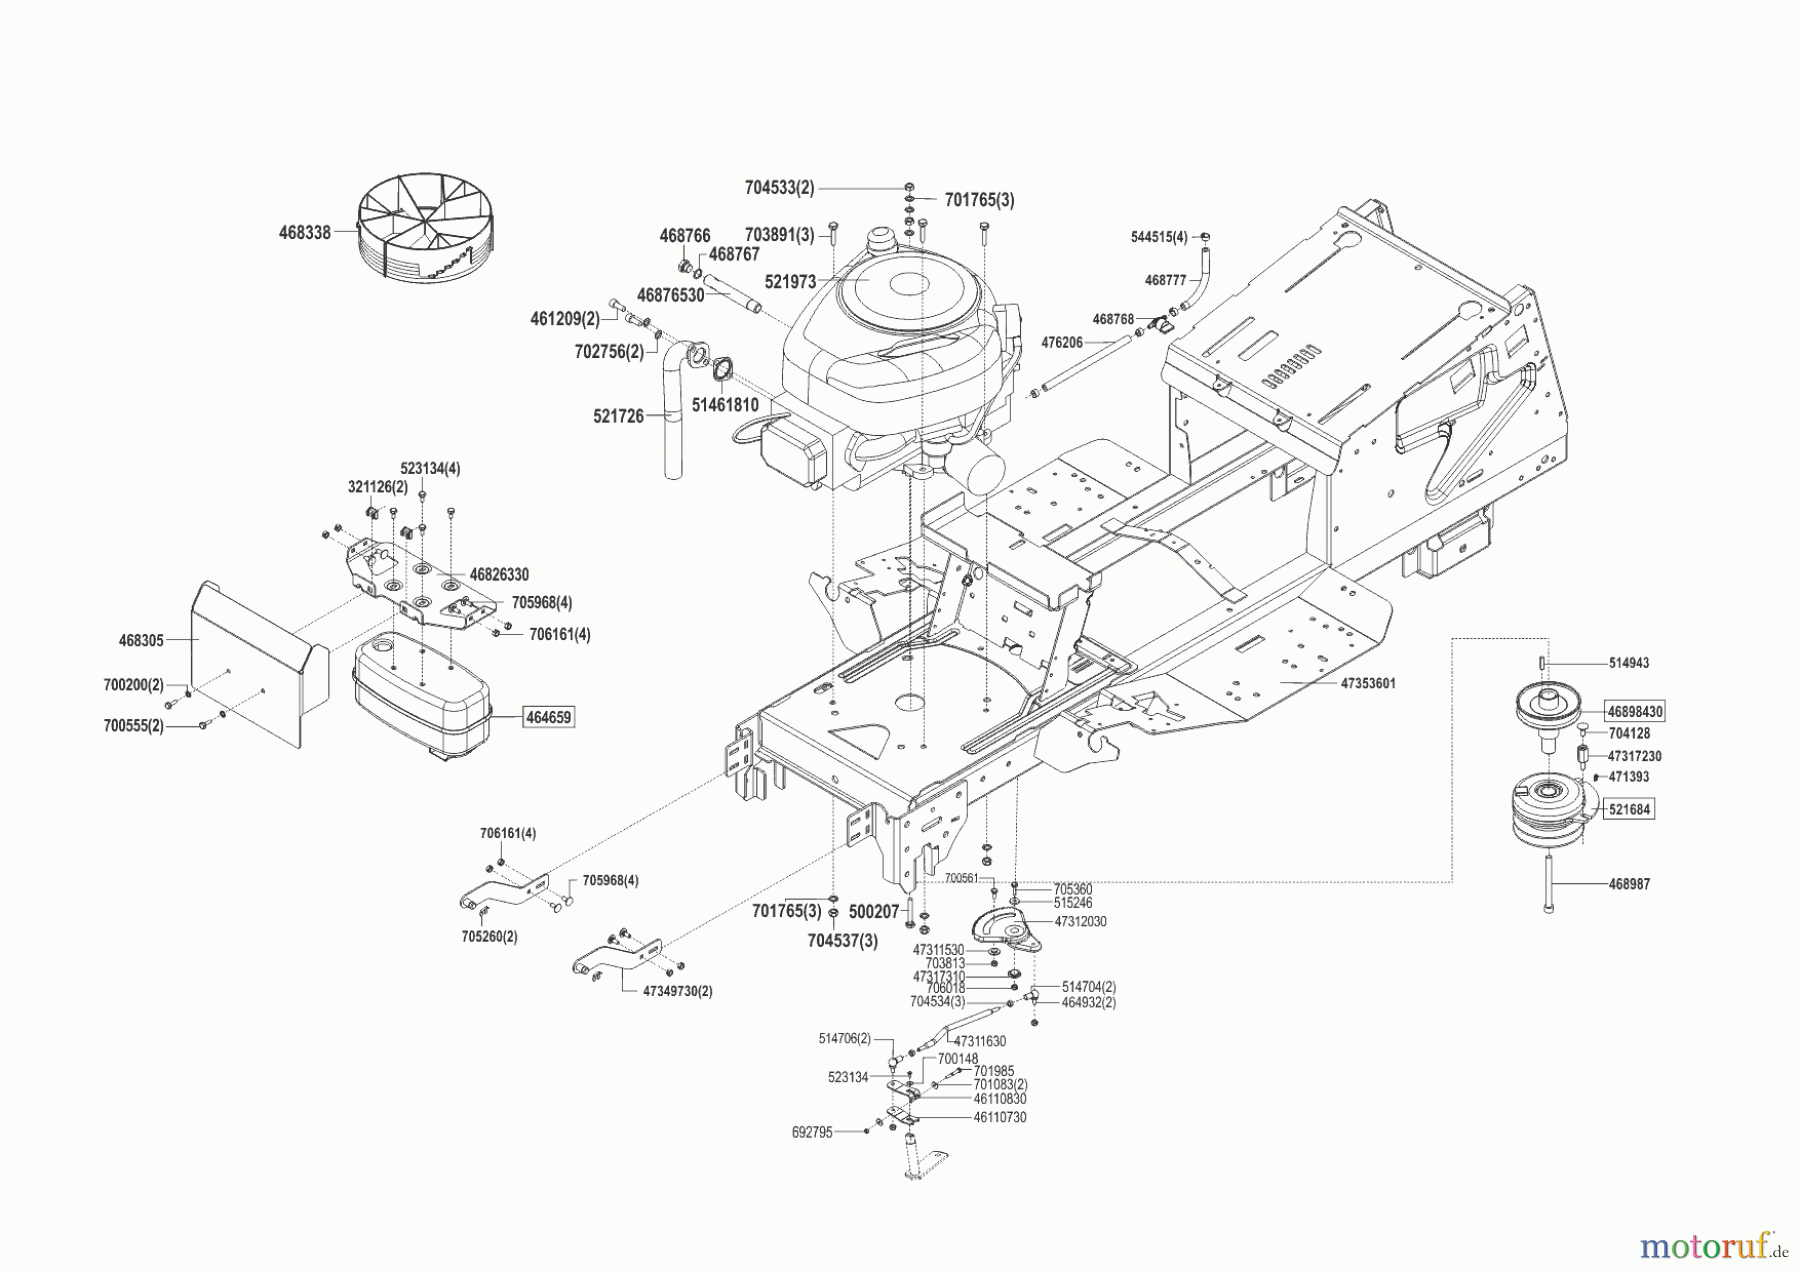  Powerline Gartentechnik Rasentraktor T 18-95.4 HD  ab 03/2016 Seite 2